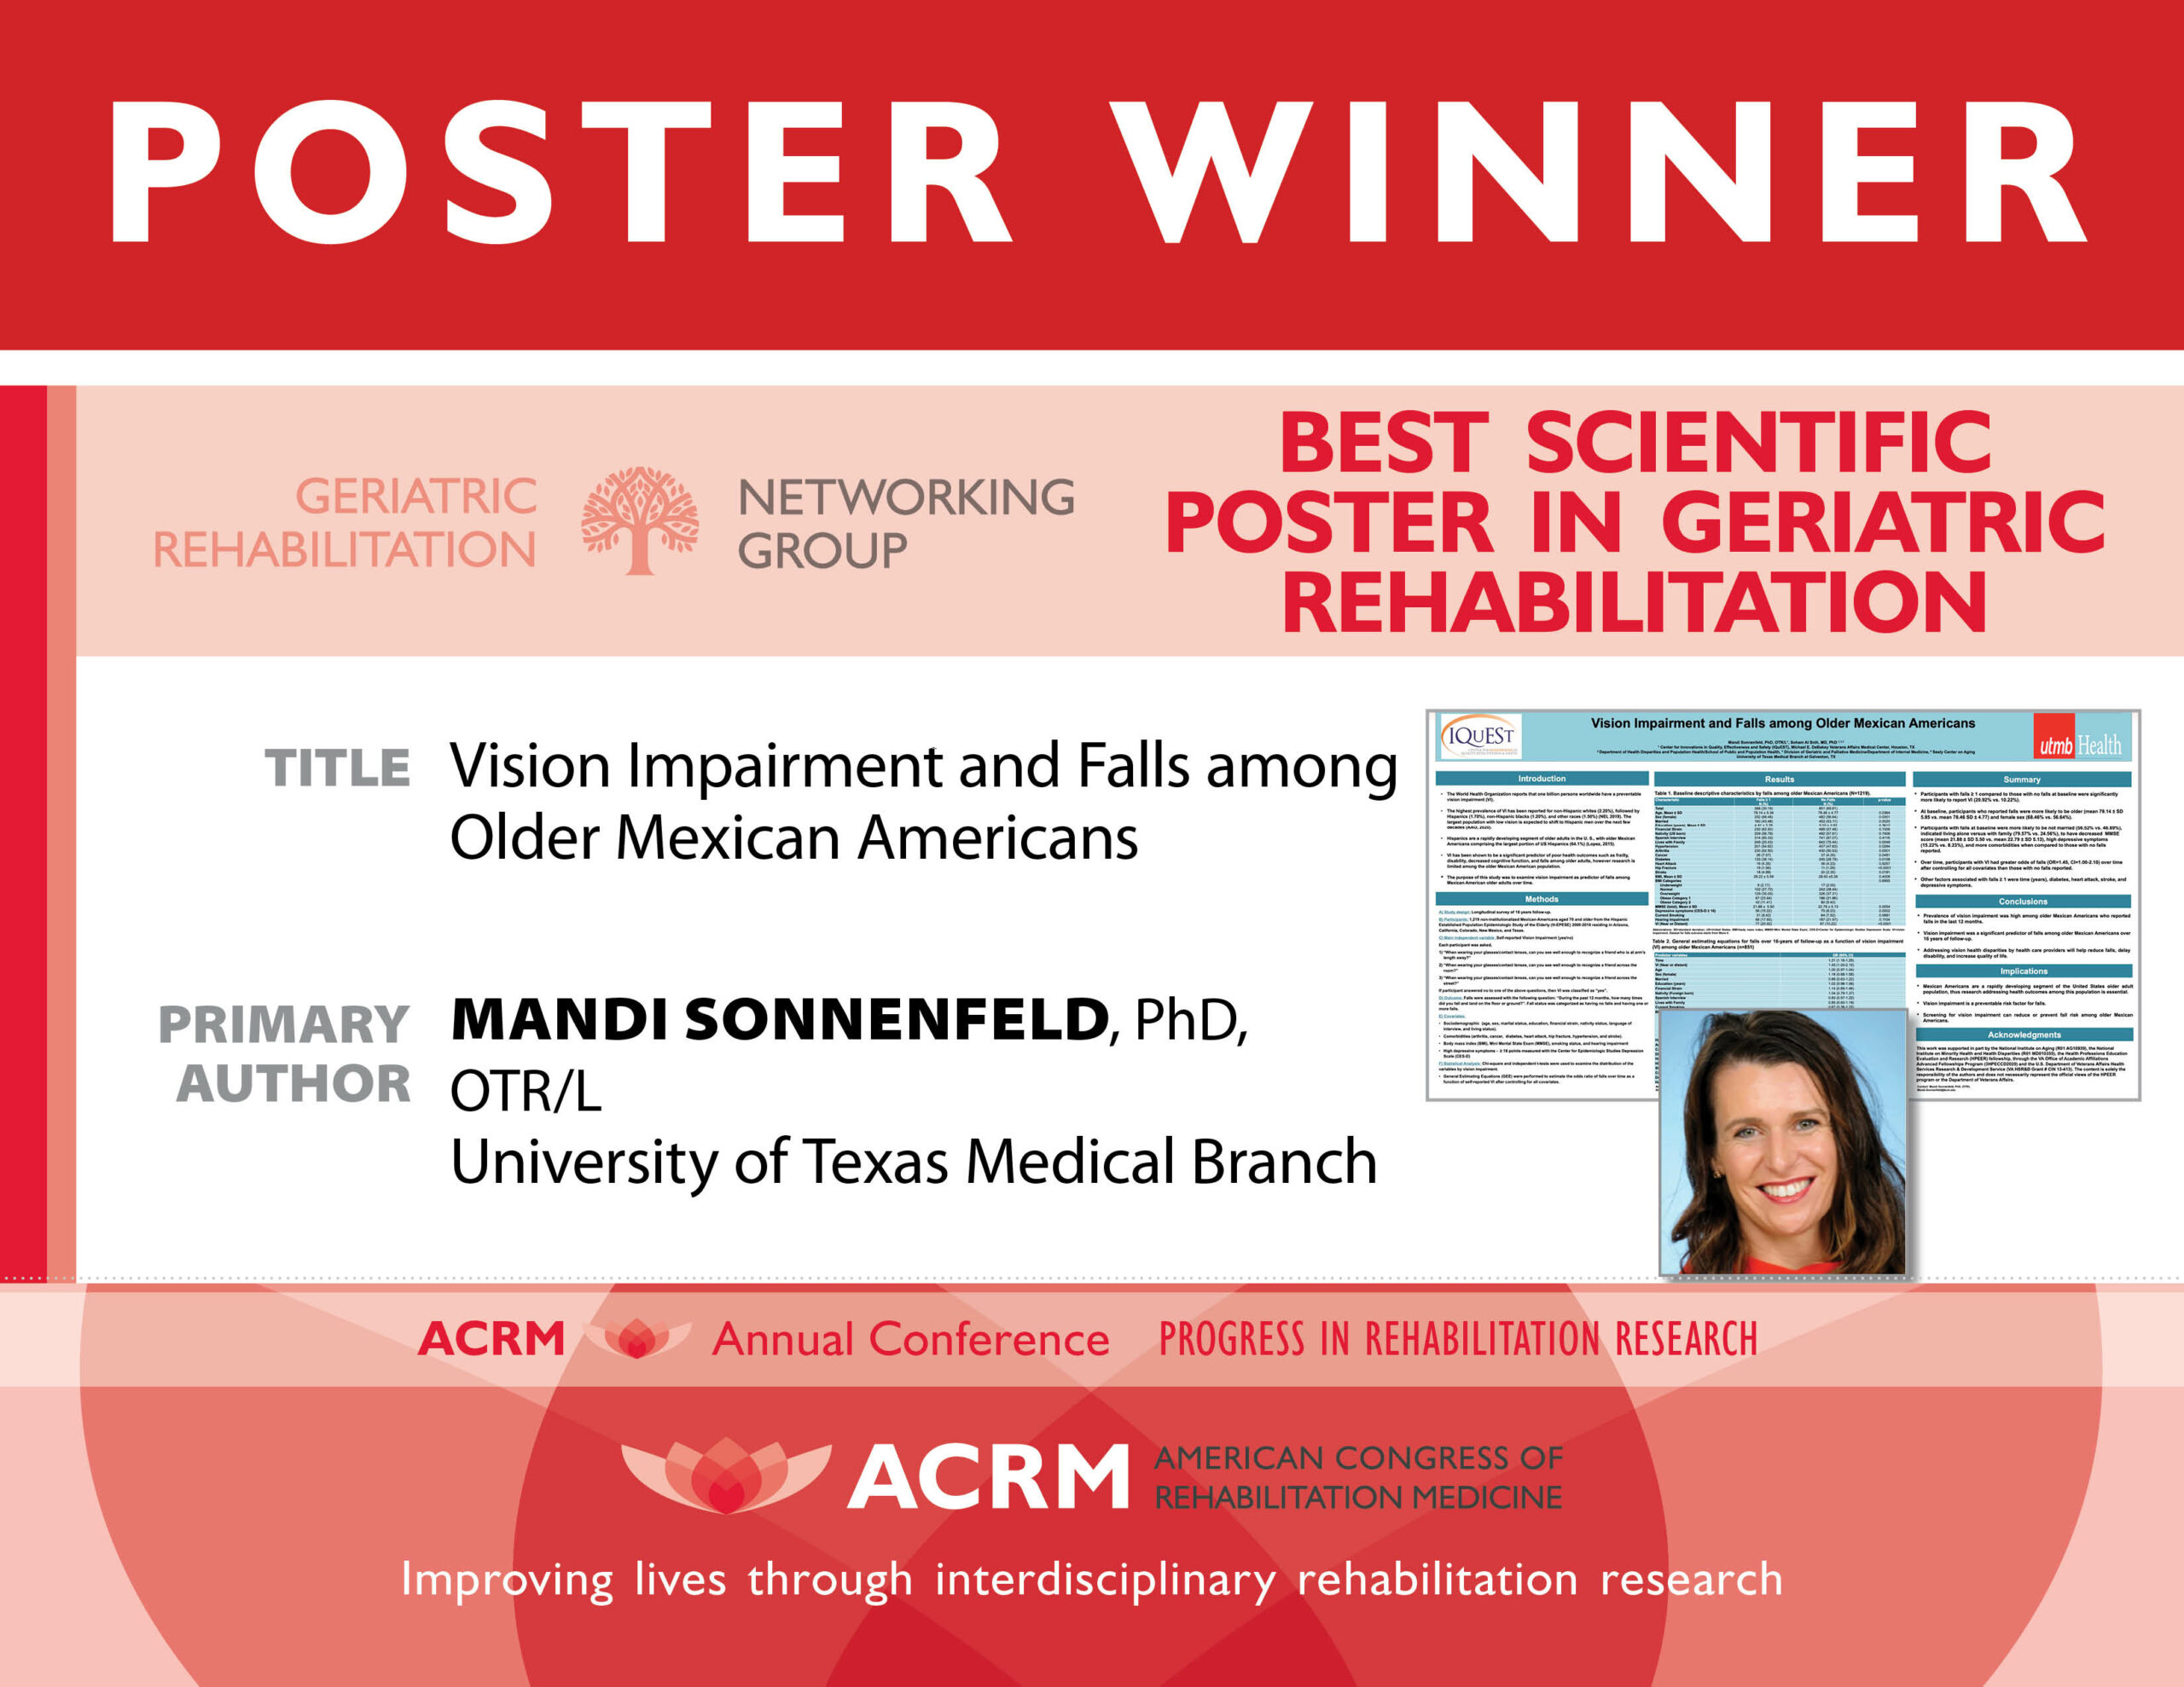 Best Scientific Poster in Geriatric Rehabilitation Award - image